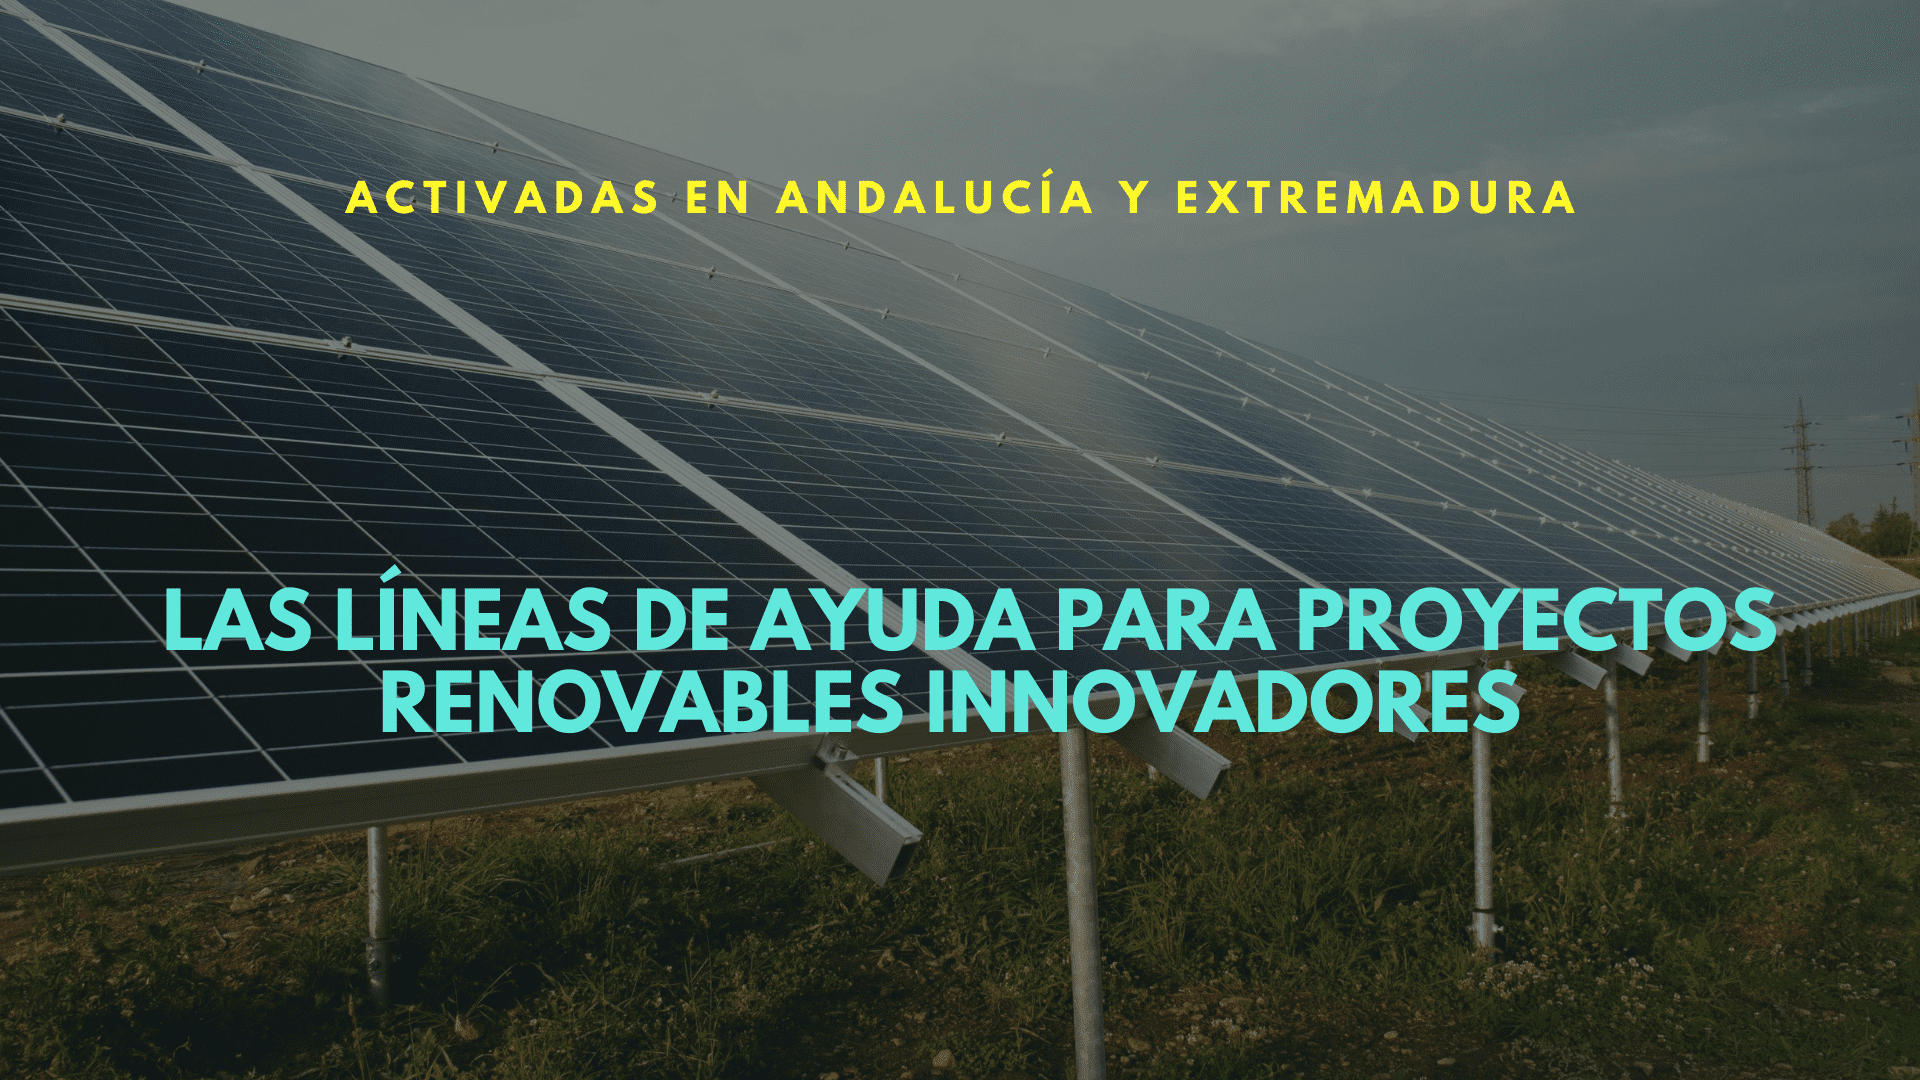 Activadas las líneas de ayuda para proyectos renovables innovadores con 136 millones de euros en Andalucía